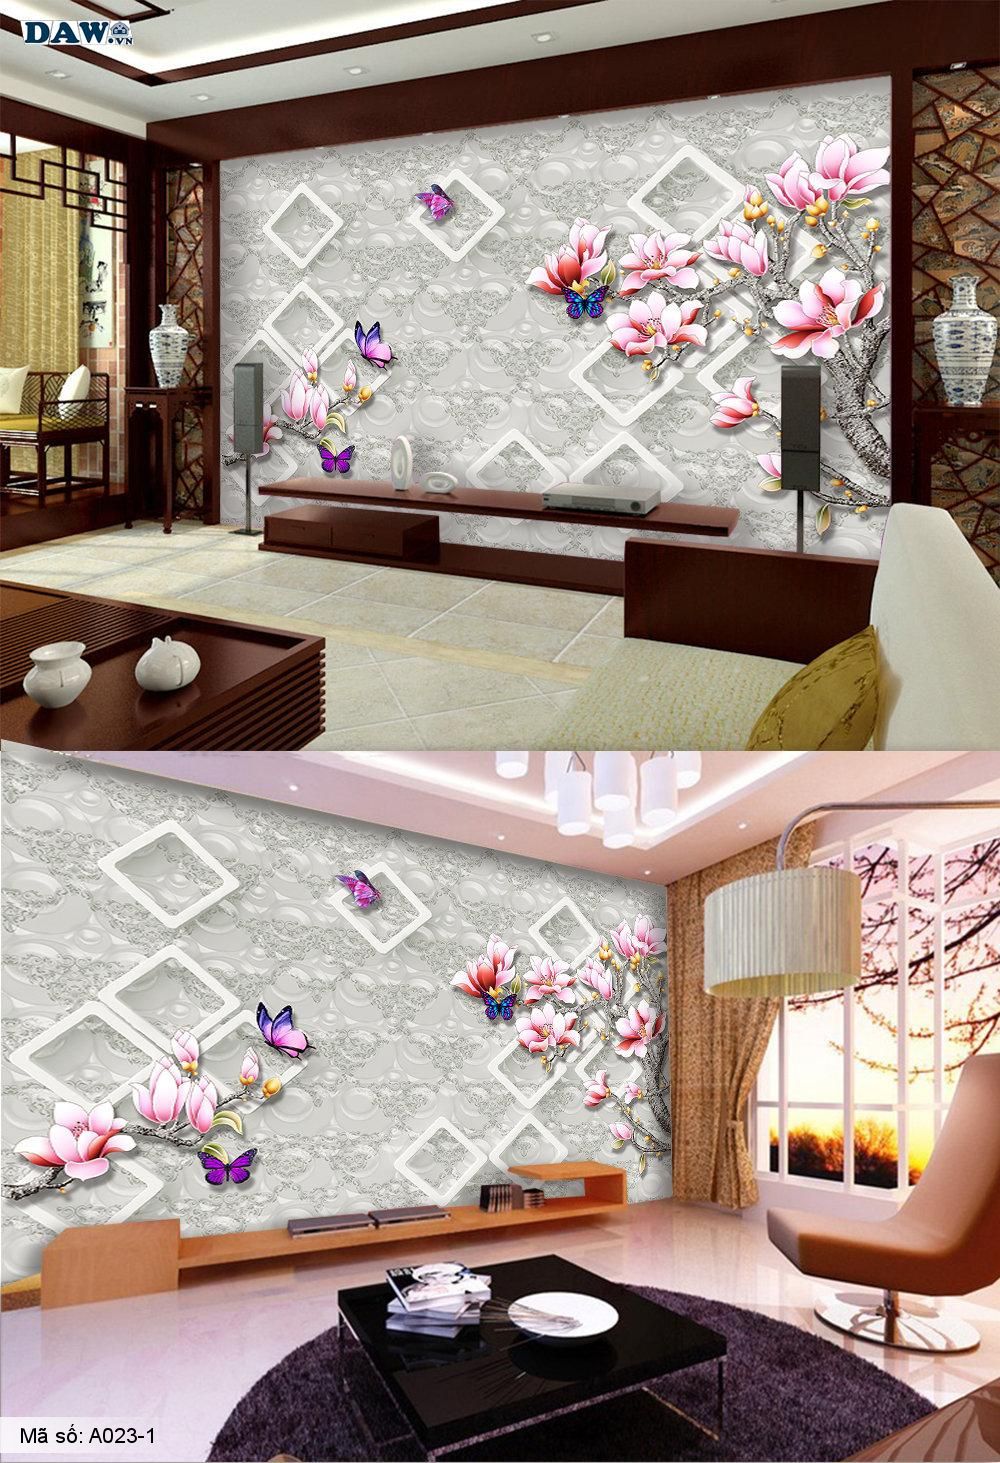 Tranh dán tường 3D, tranh dán tường Hàn Quốc, tranh ngọc A023-1, Cành hoa, hoa văn giả ngọc nổi 3D